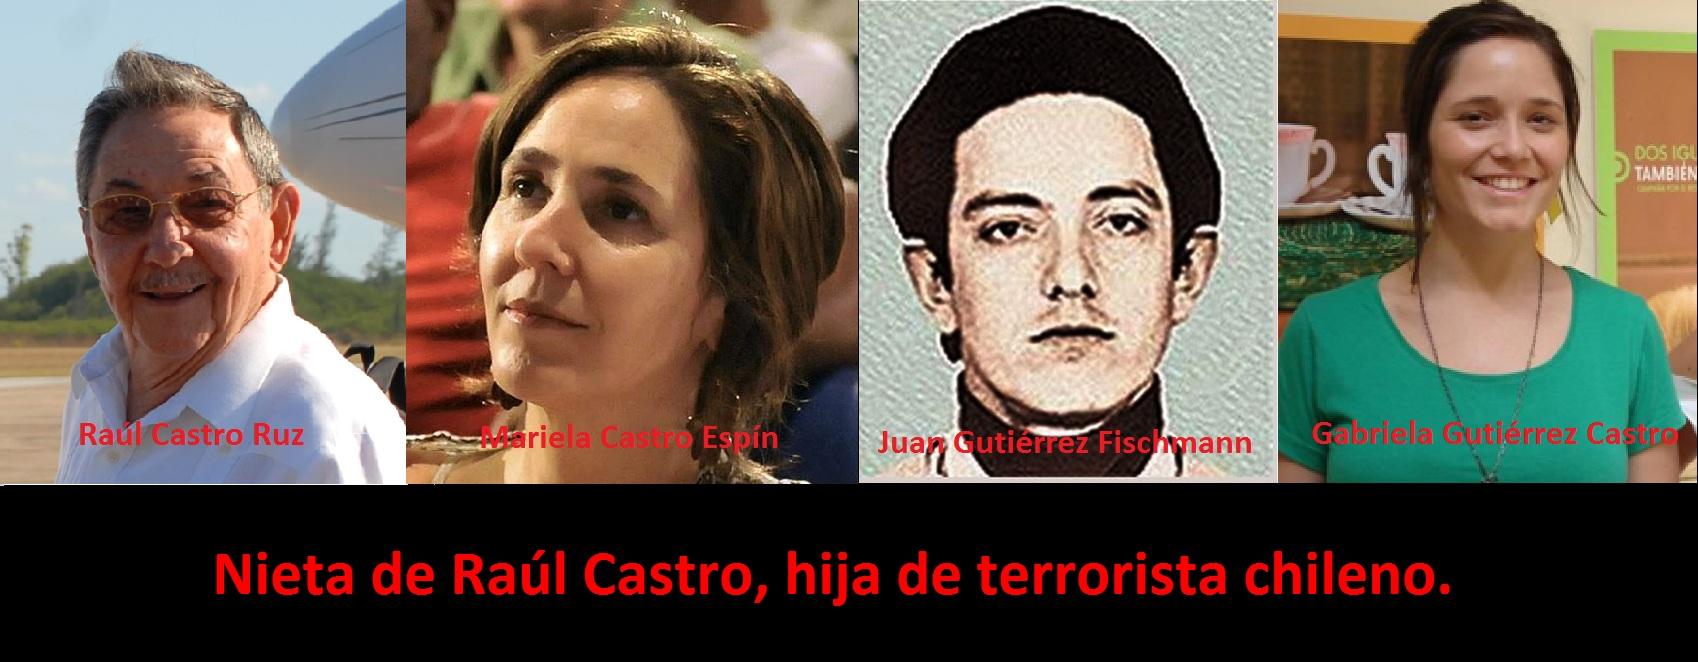 Nieta de Raúl Castro, hija de terrorista chileno.